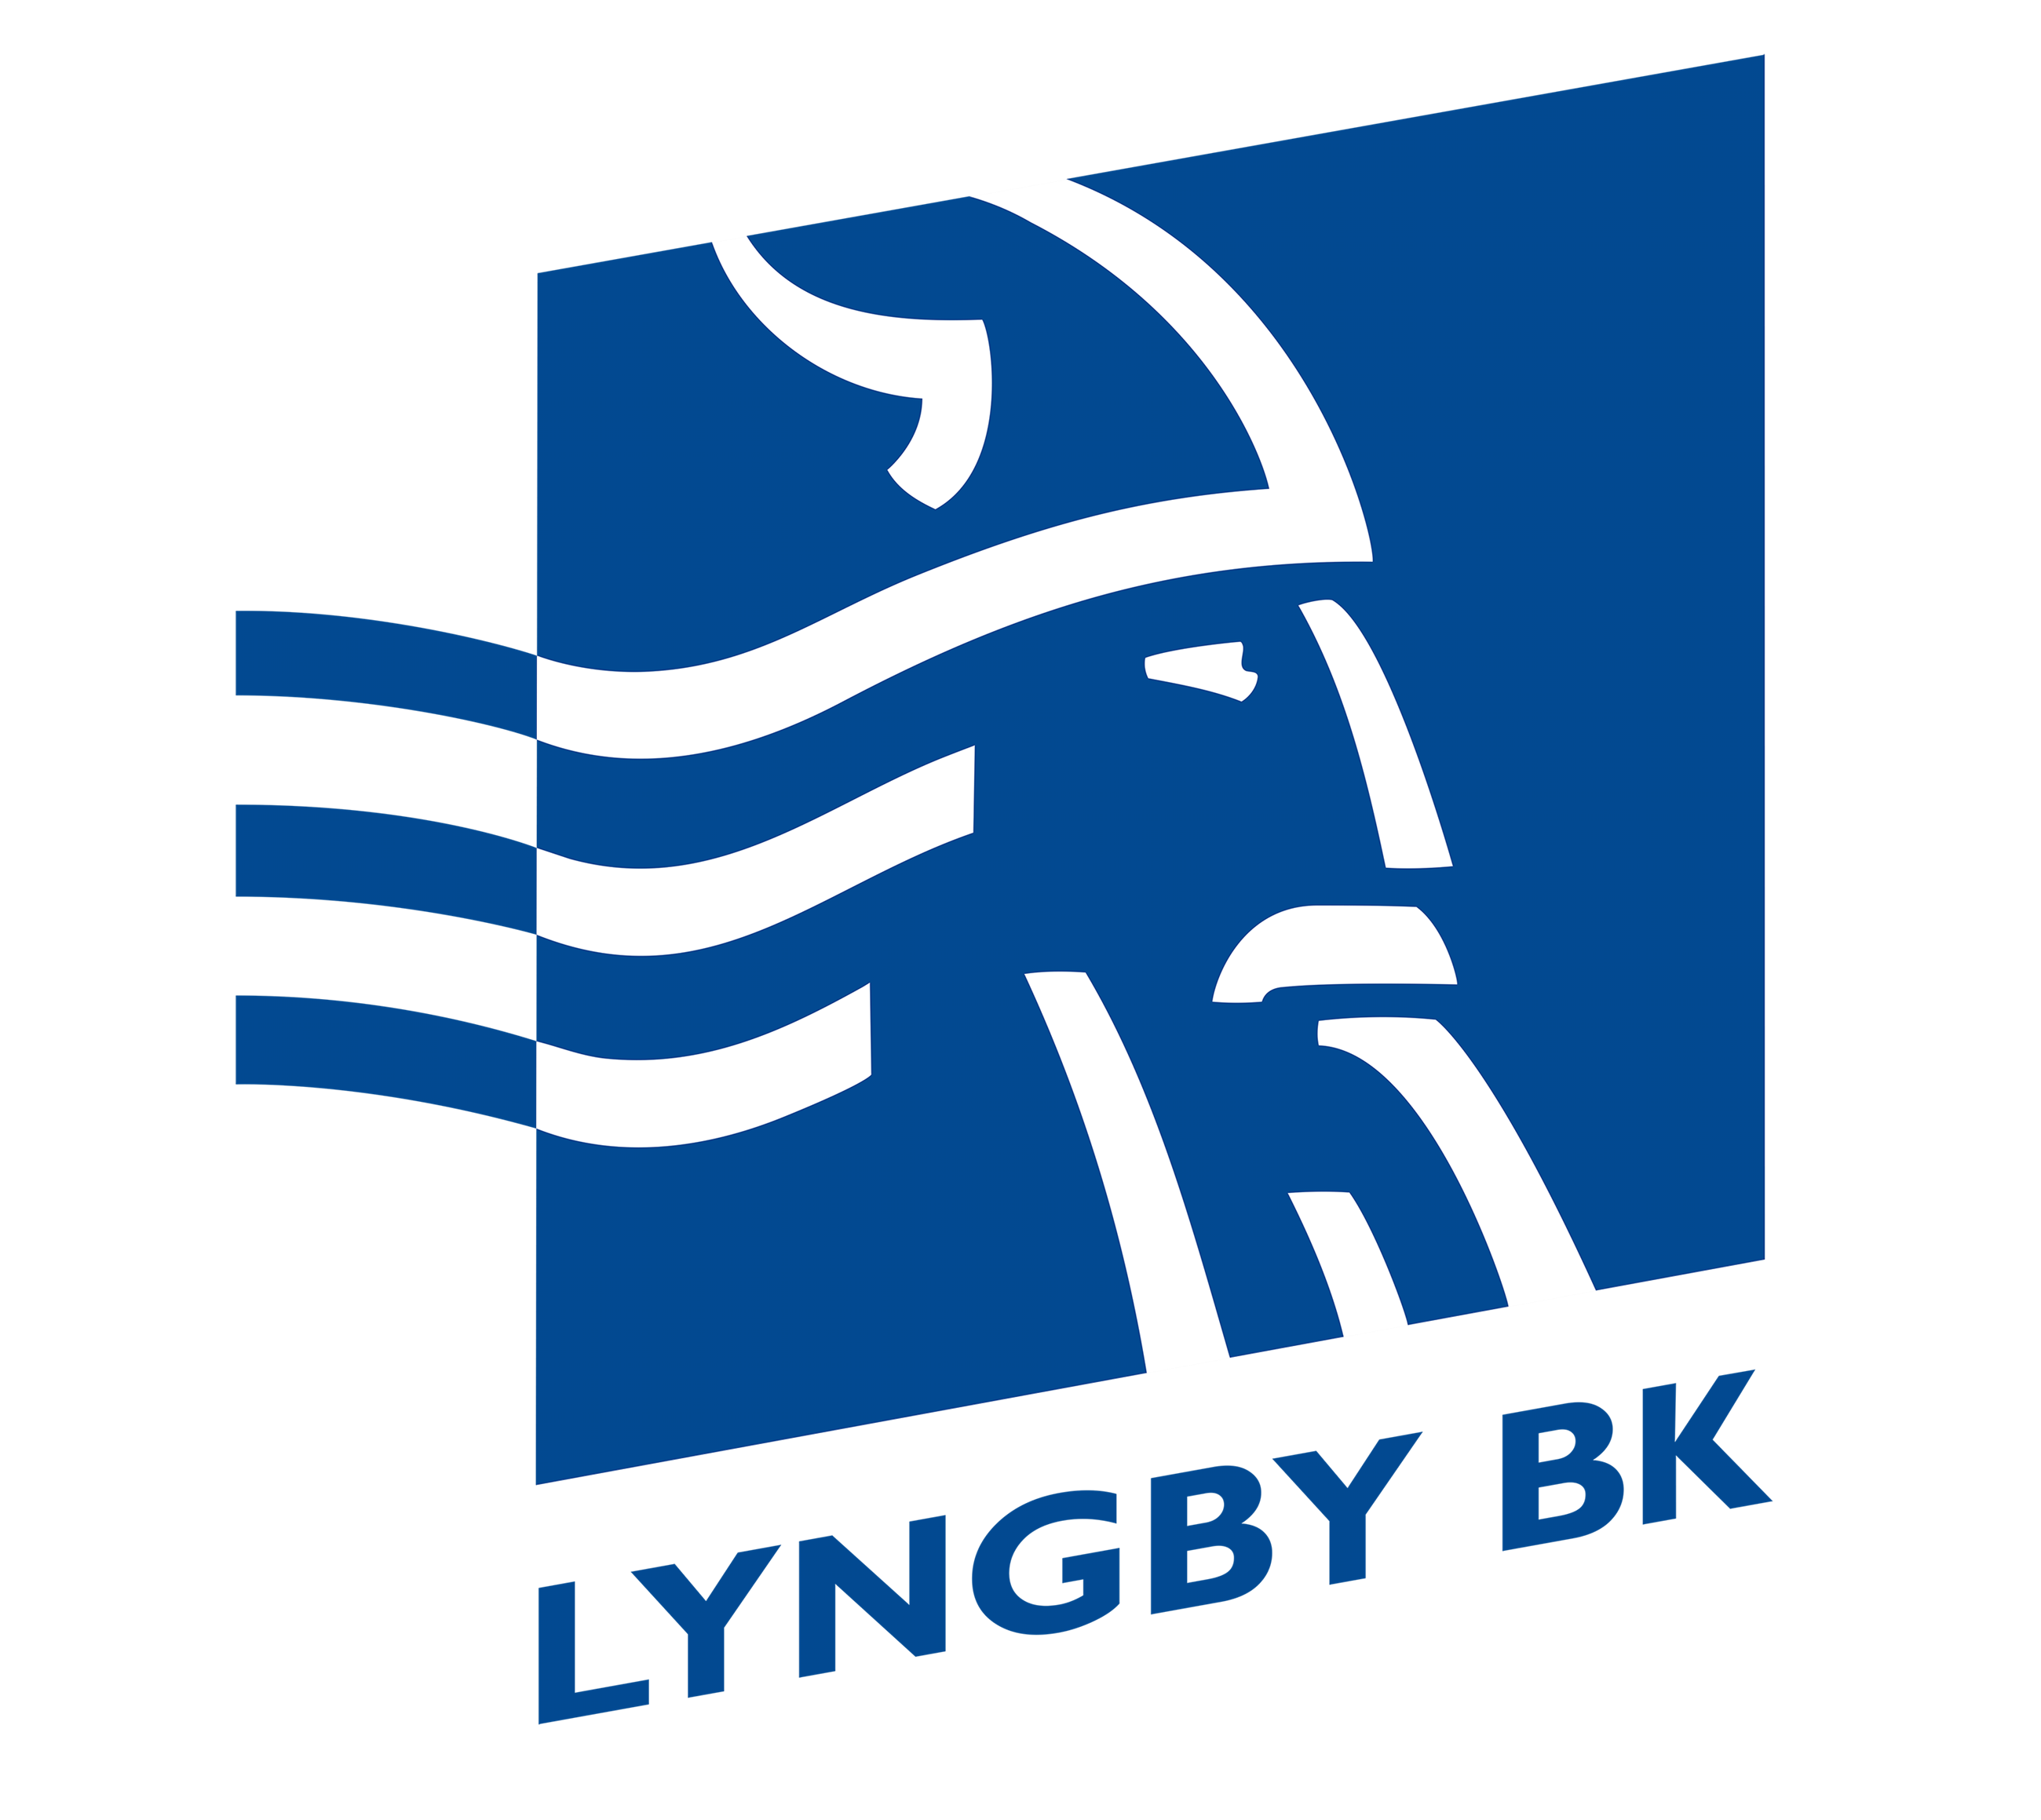 lyngby bk logo kopi